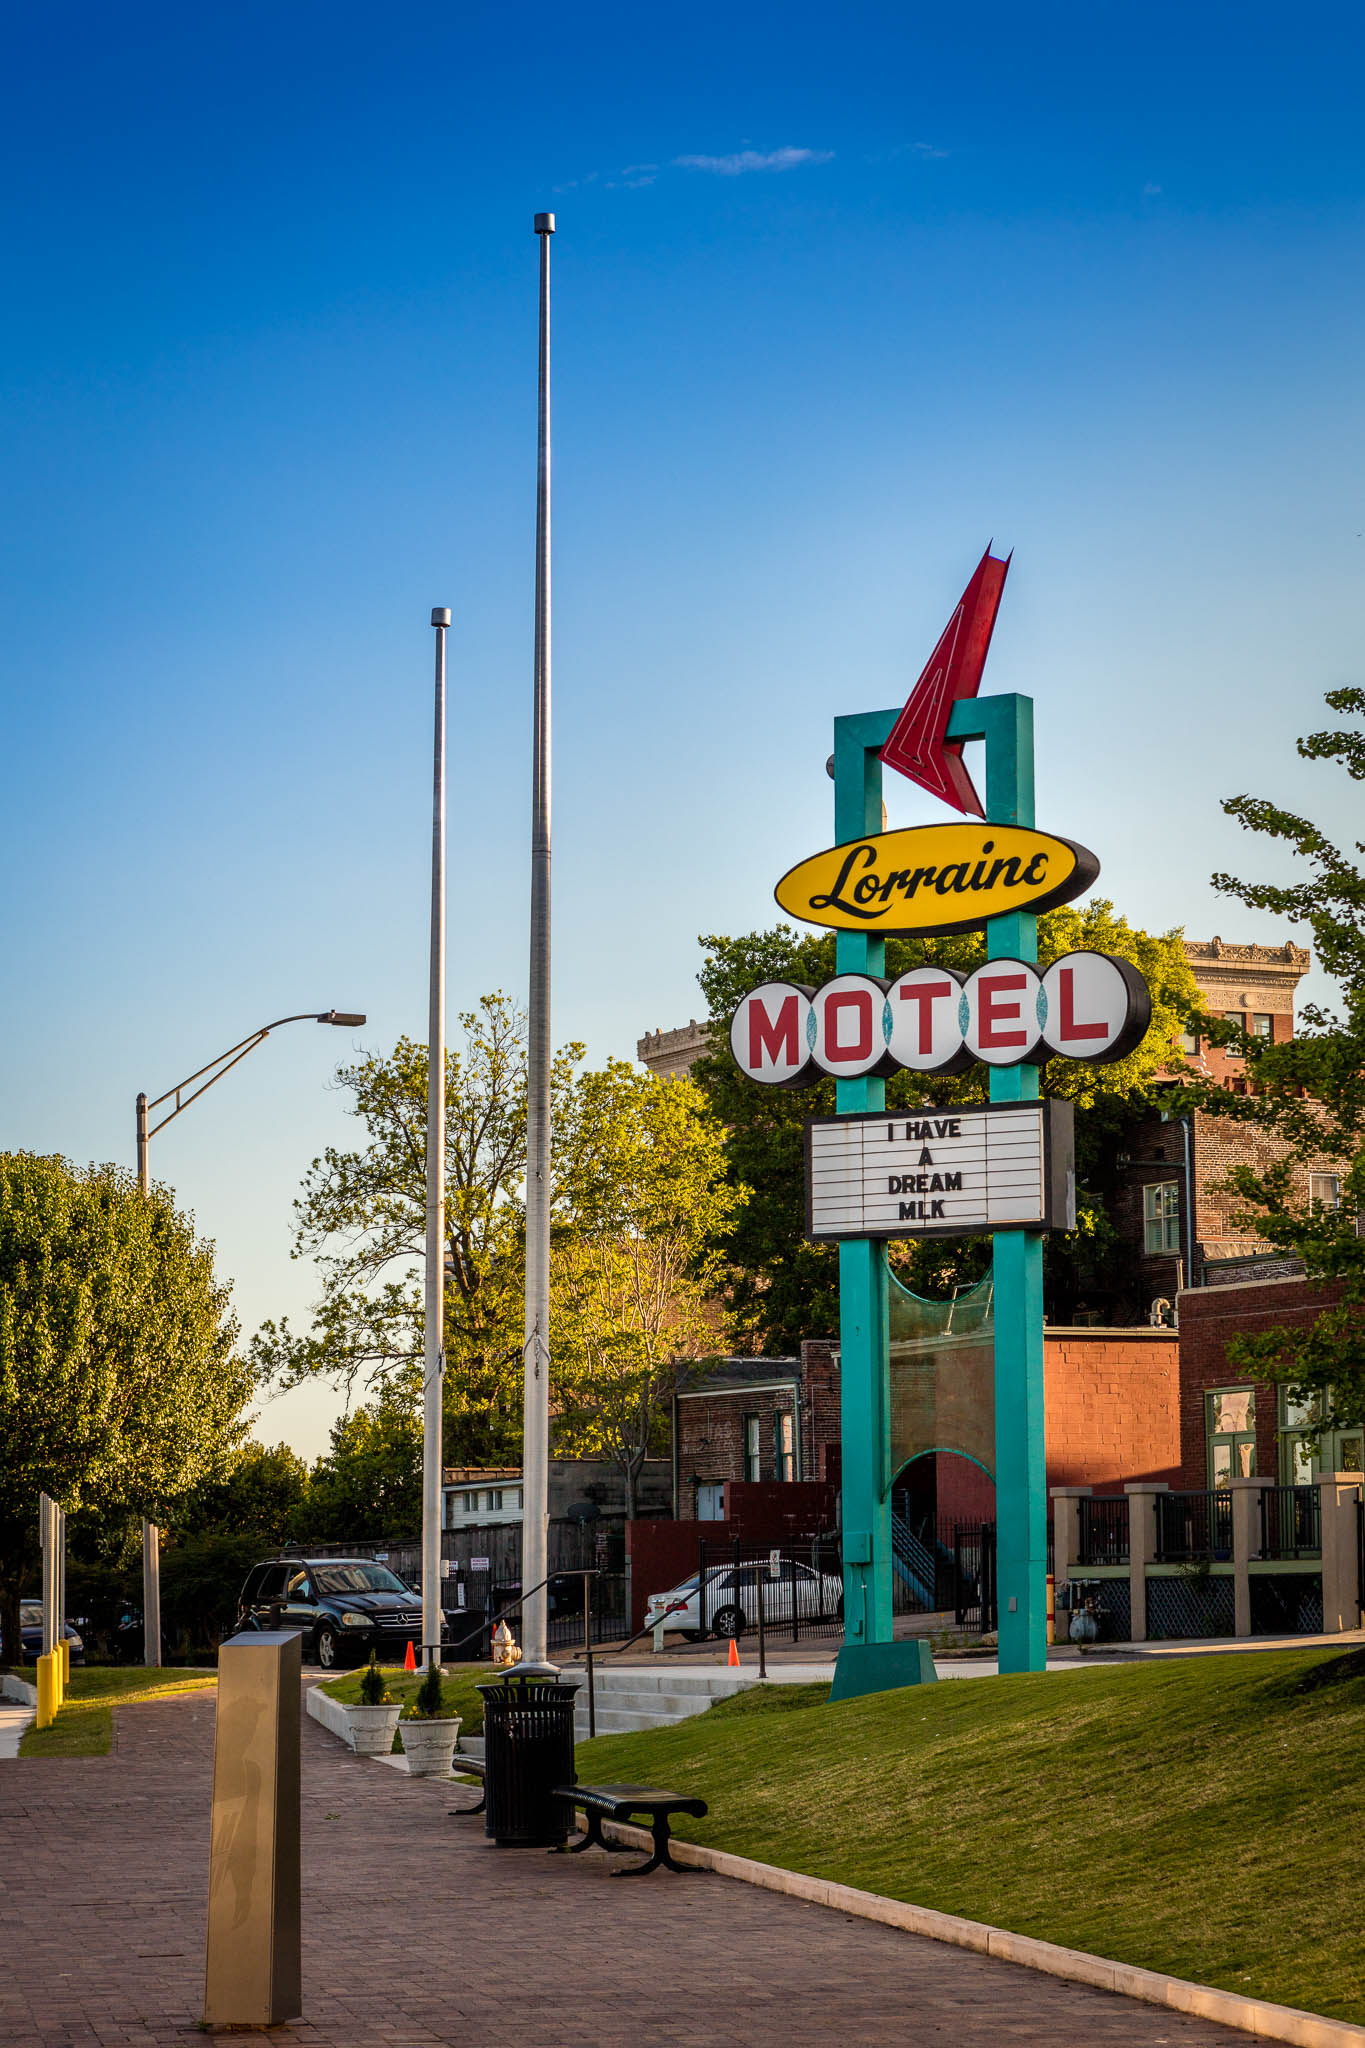 Lorraine Motel in Memphis, TN